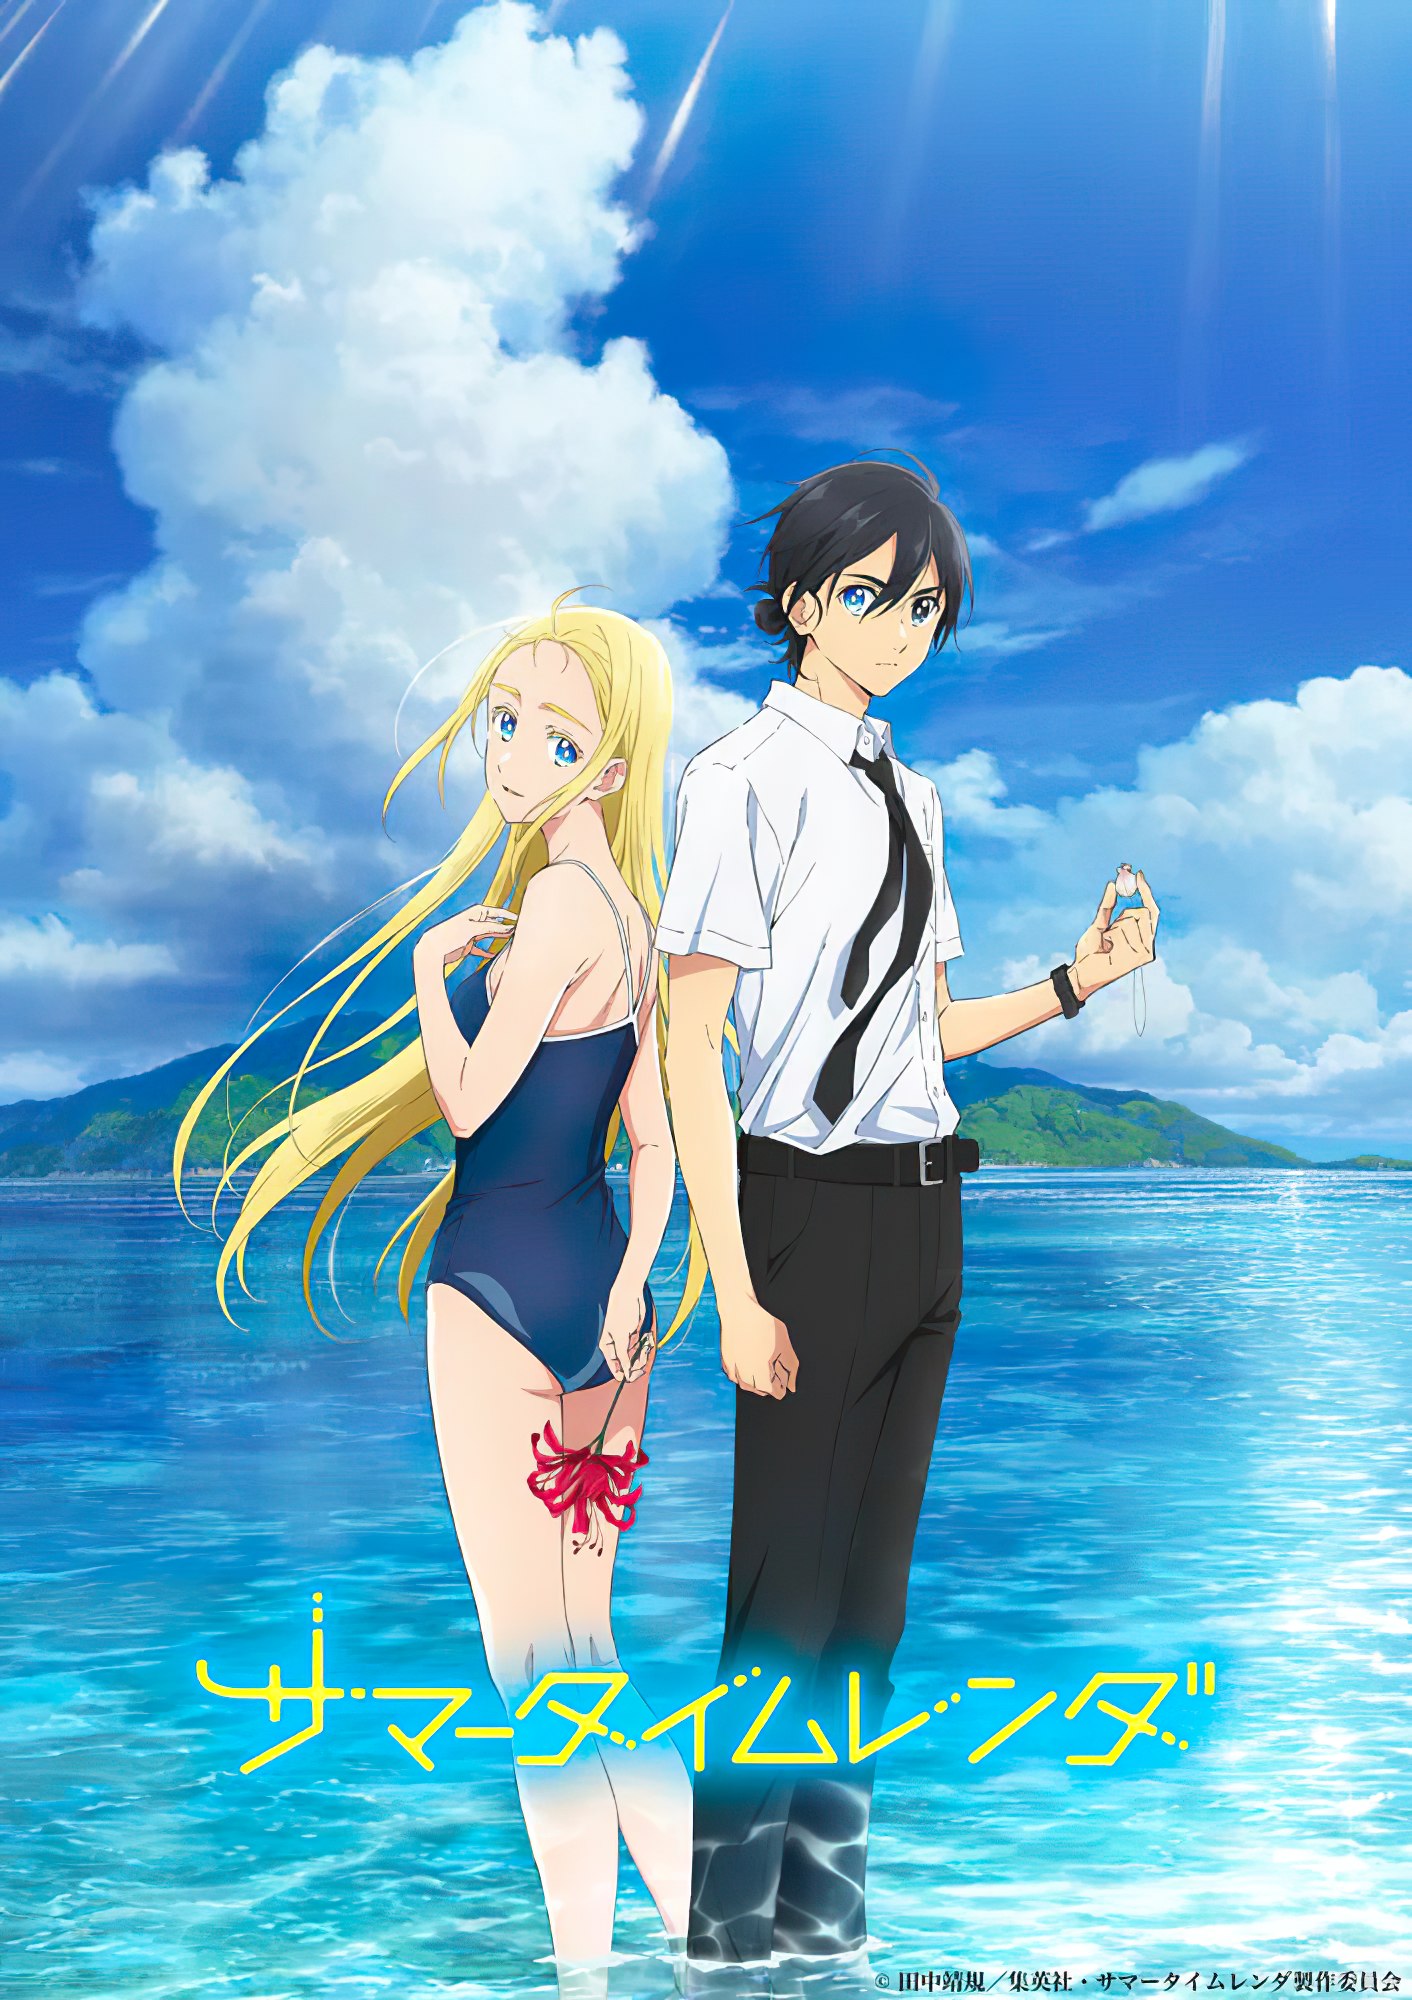 Summer Time Rendering spændings anime serien kommer i 2022